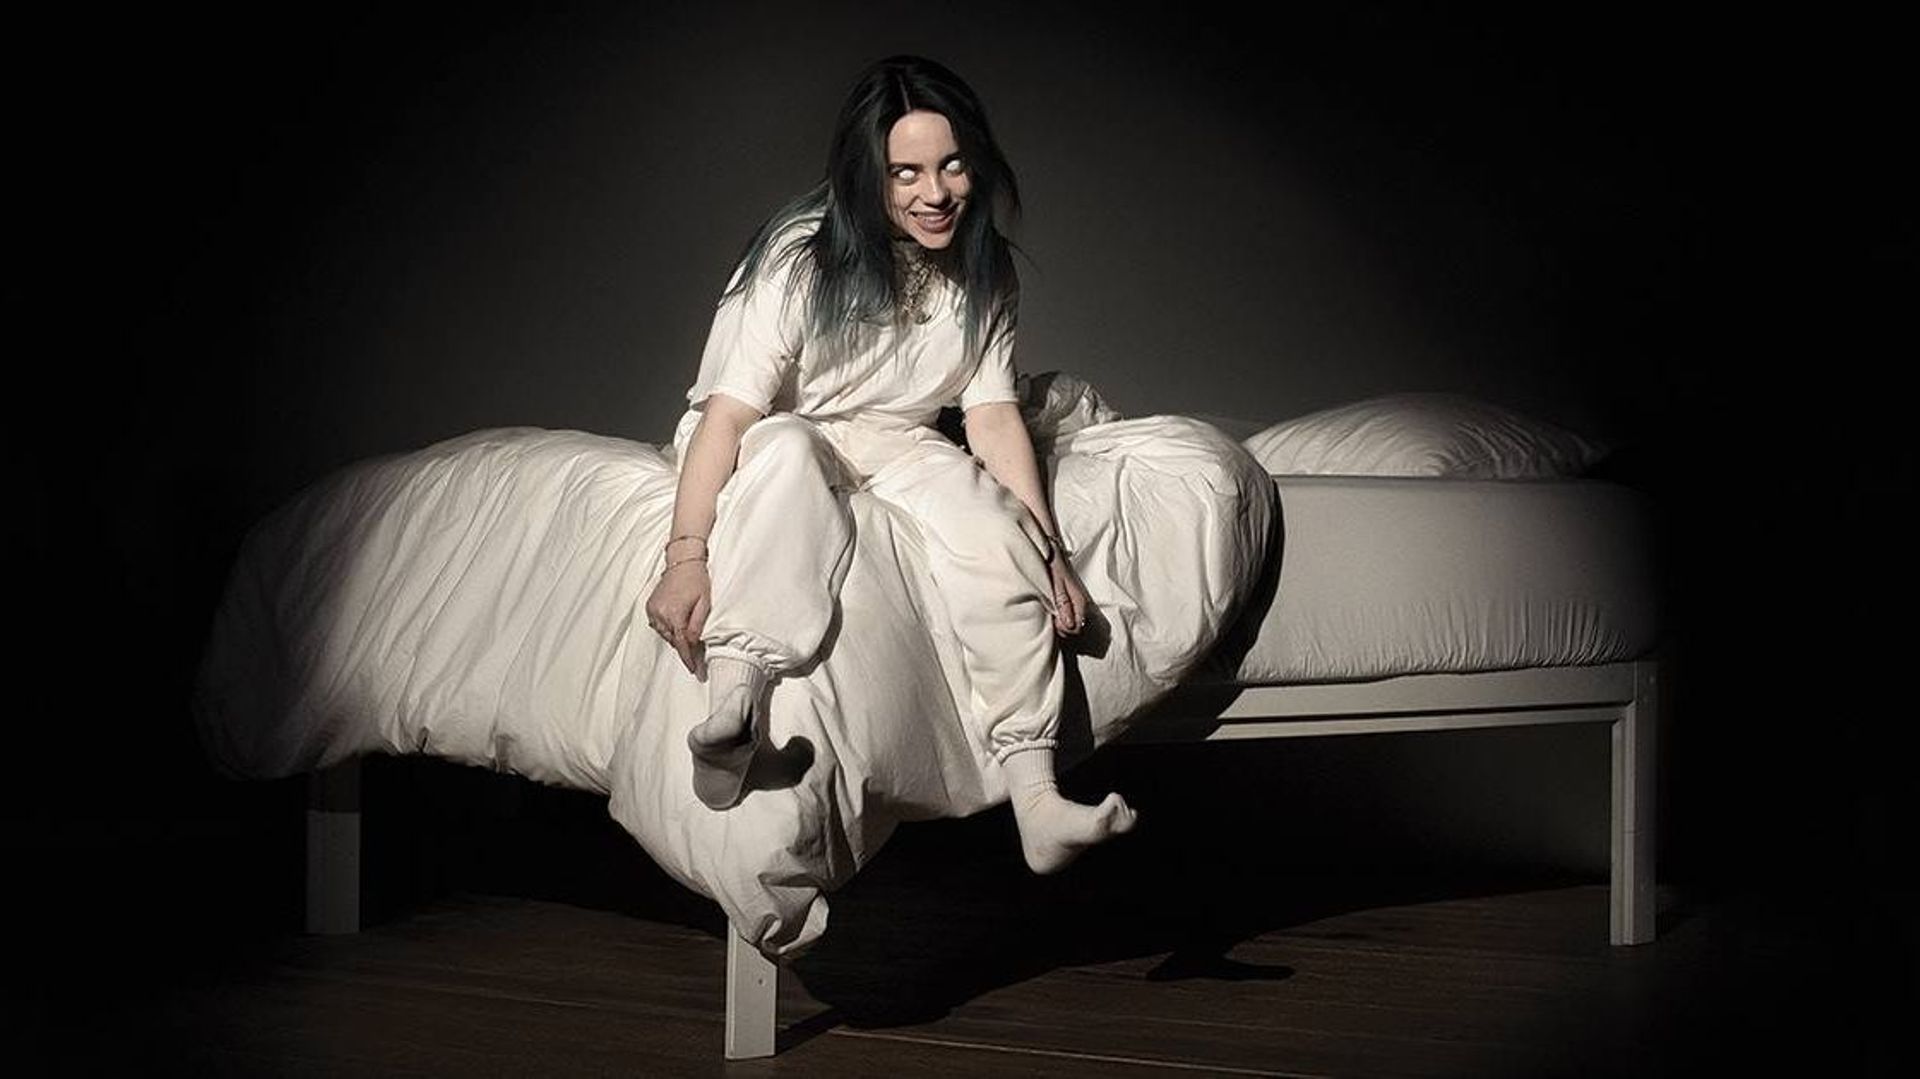 L'album de Billie Eilish intitulé "When We All Fall Asleep, Where Do We Go" paraîtra le 29 mars.